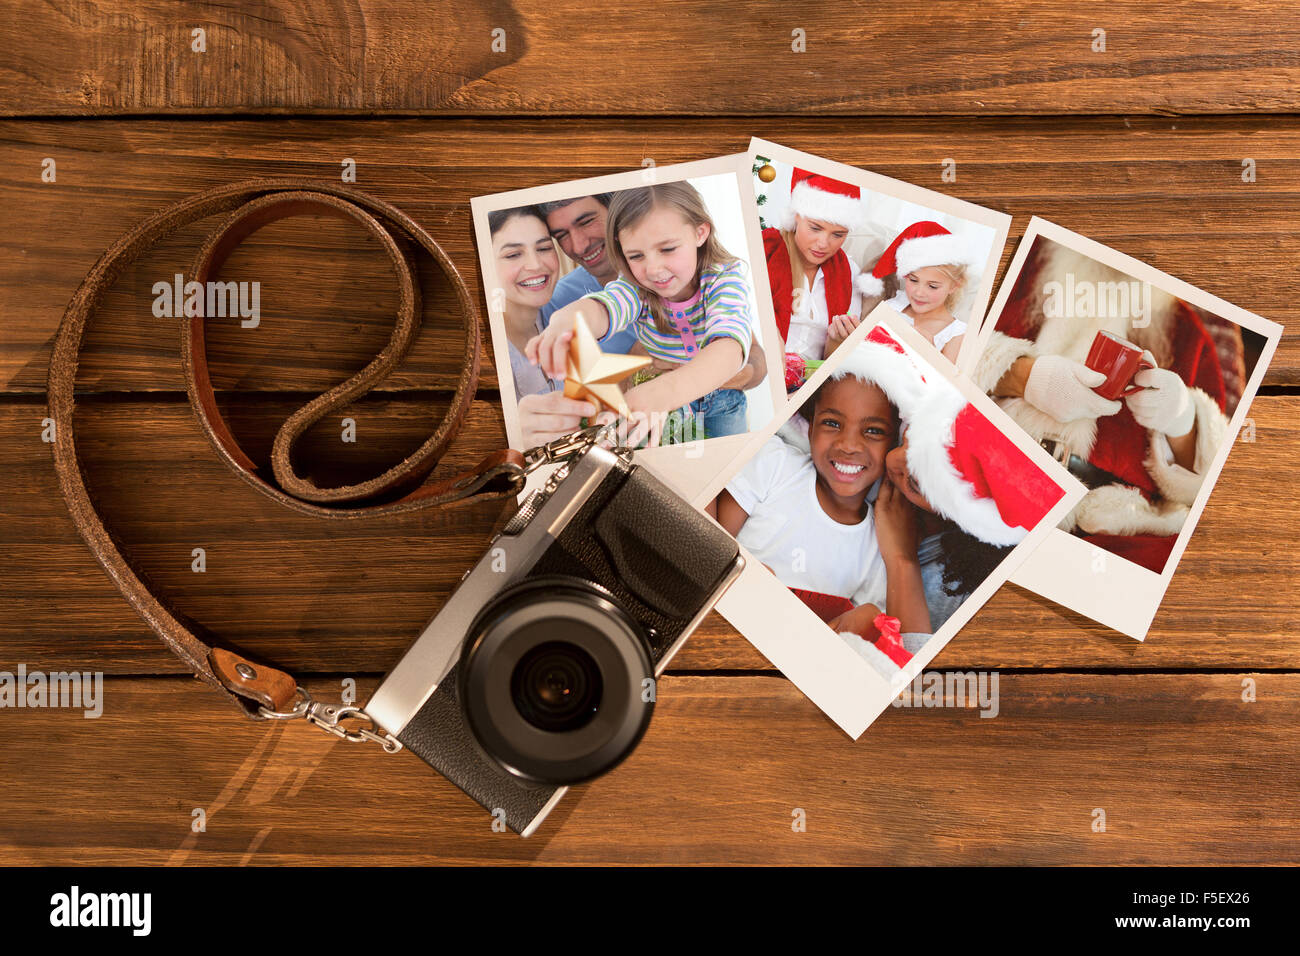 Imagen compuesta de Navidad en familia retrato Foto de stock